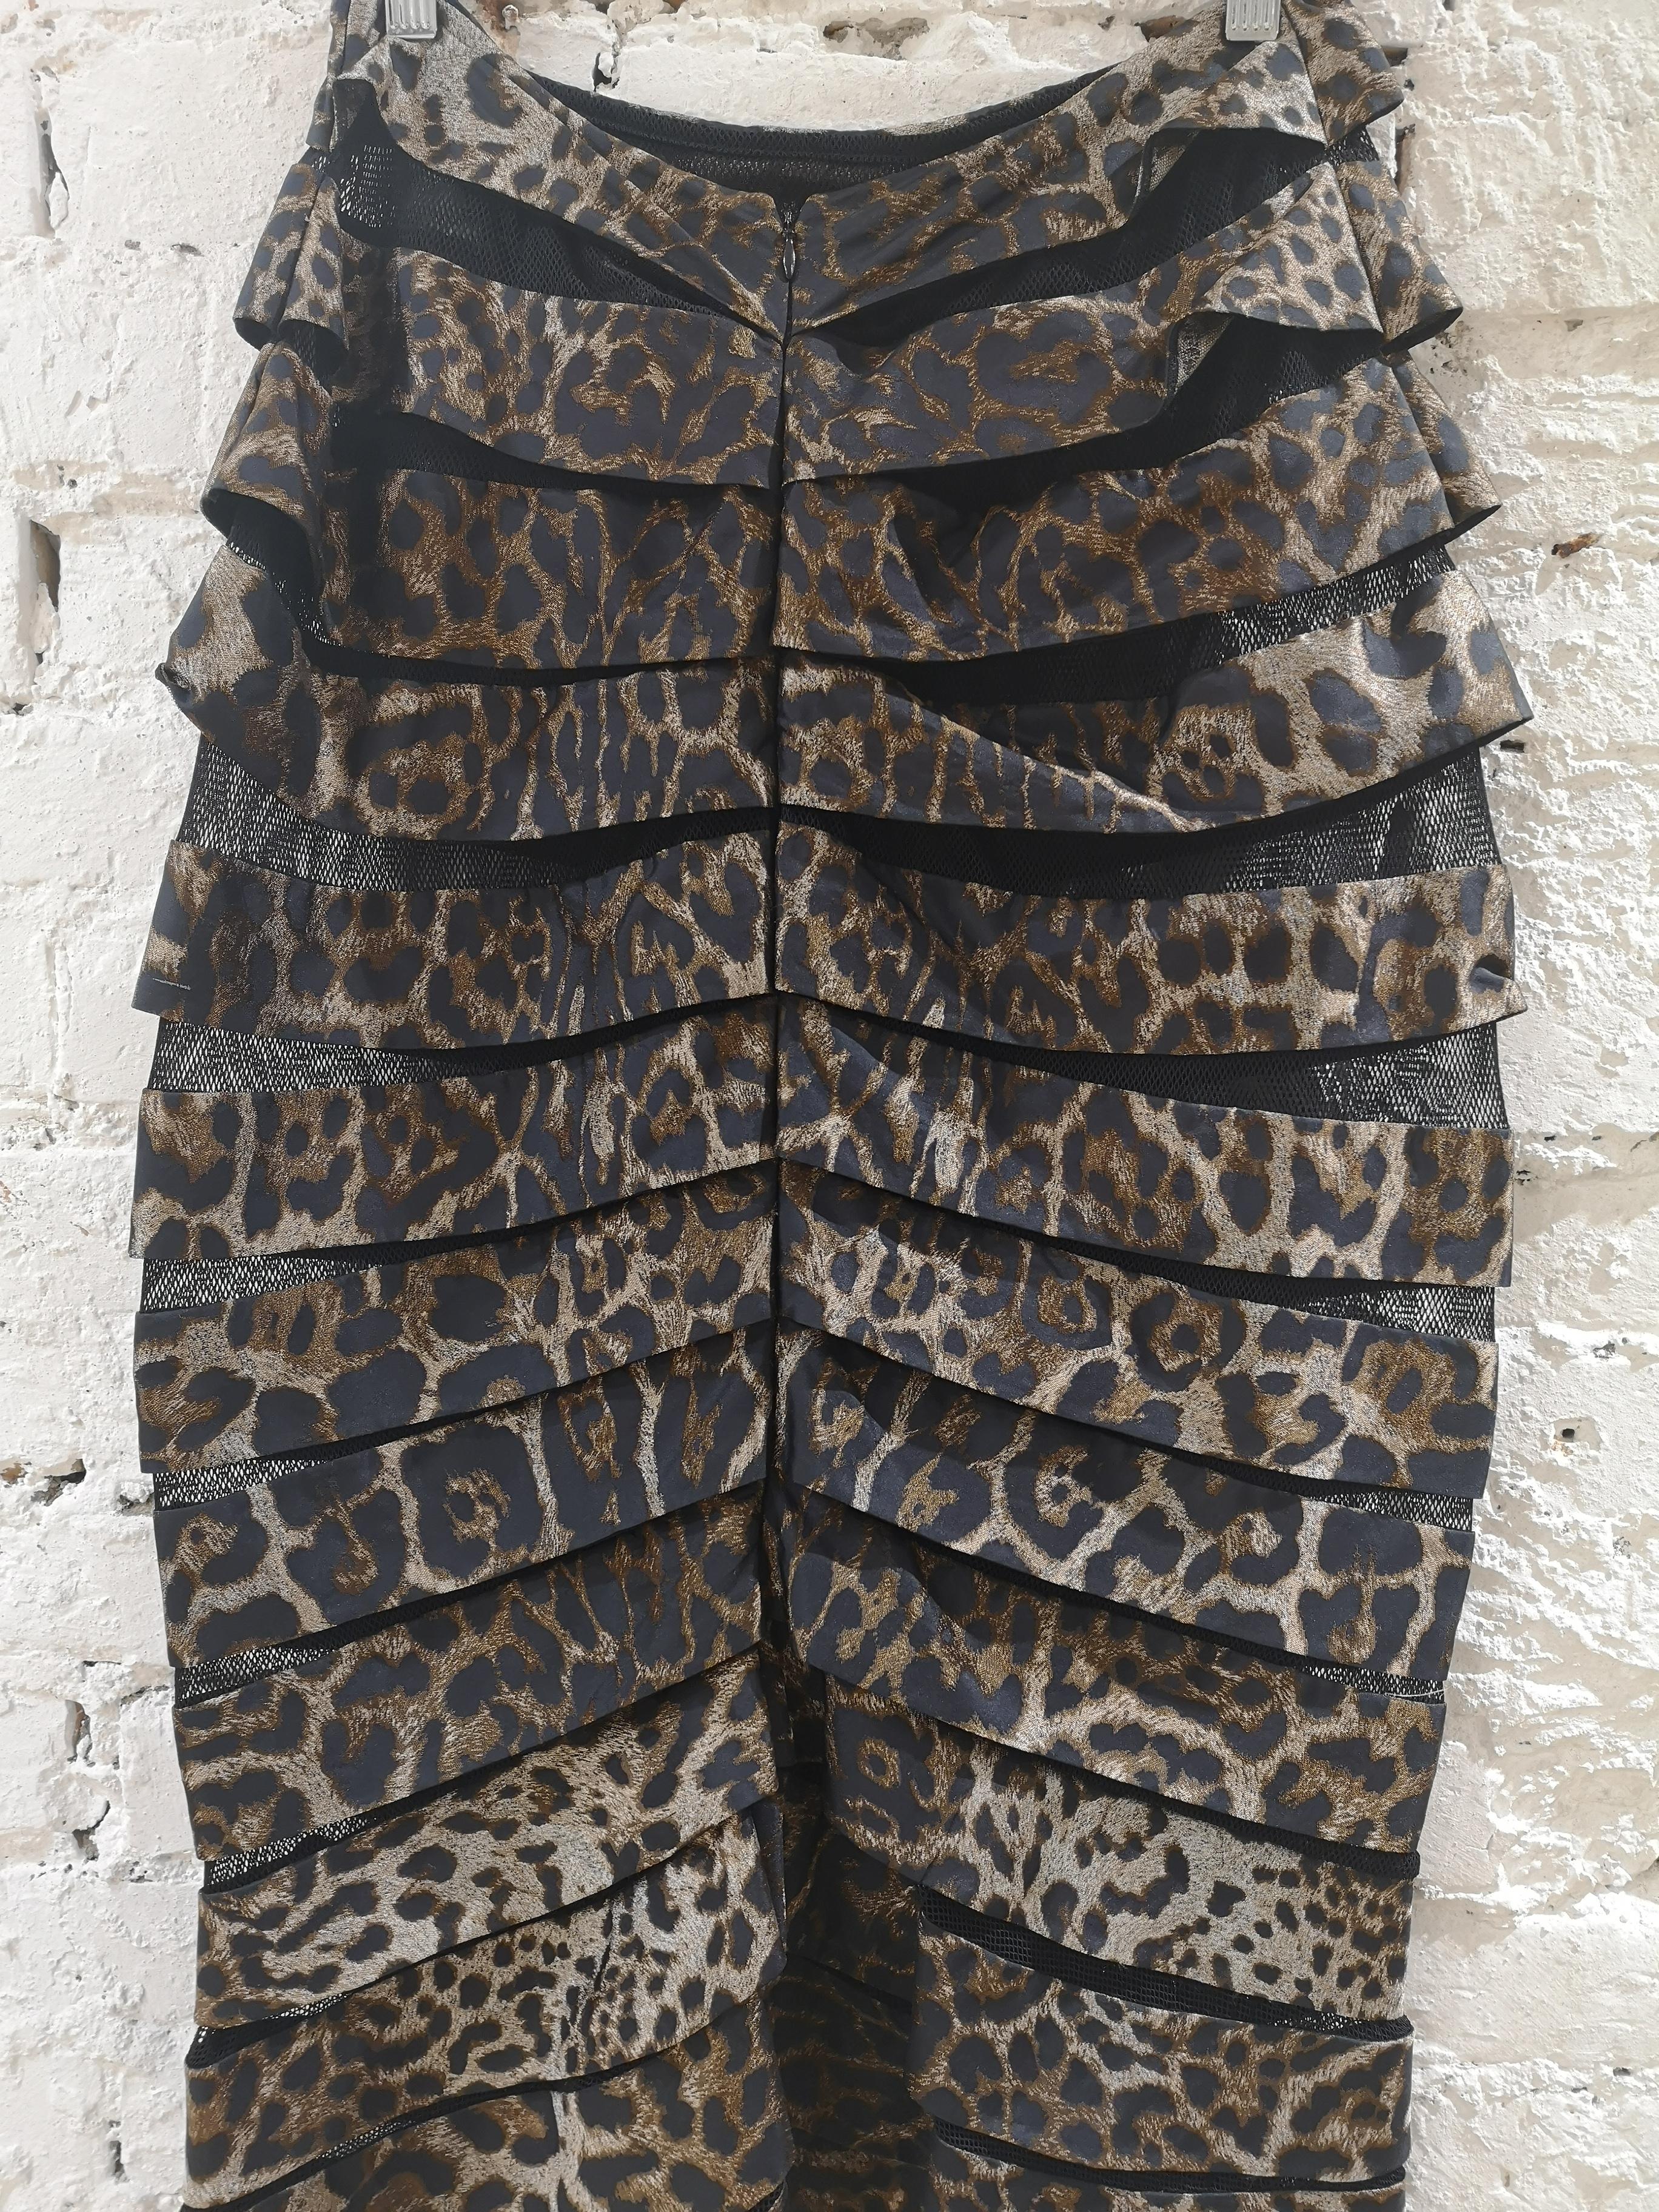 Gianfranco Ferrè cheetah see through skirt 4